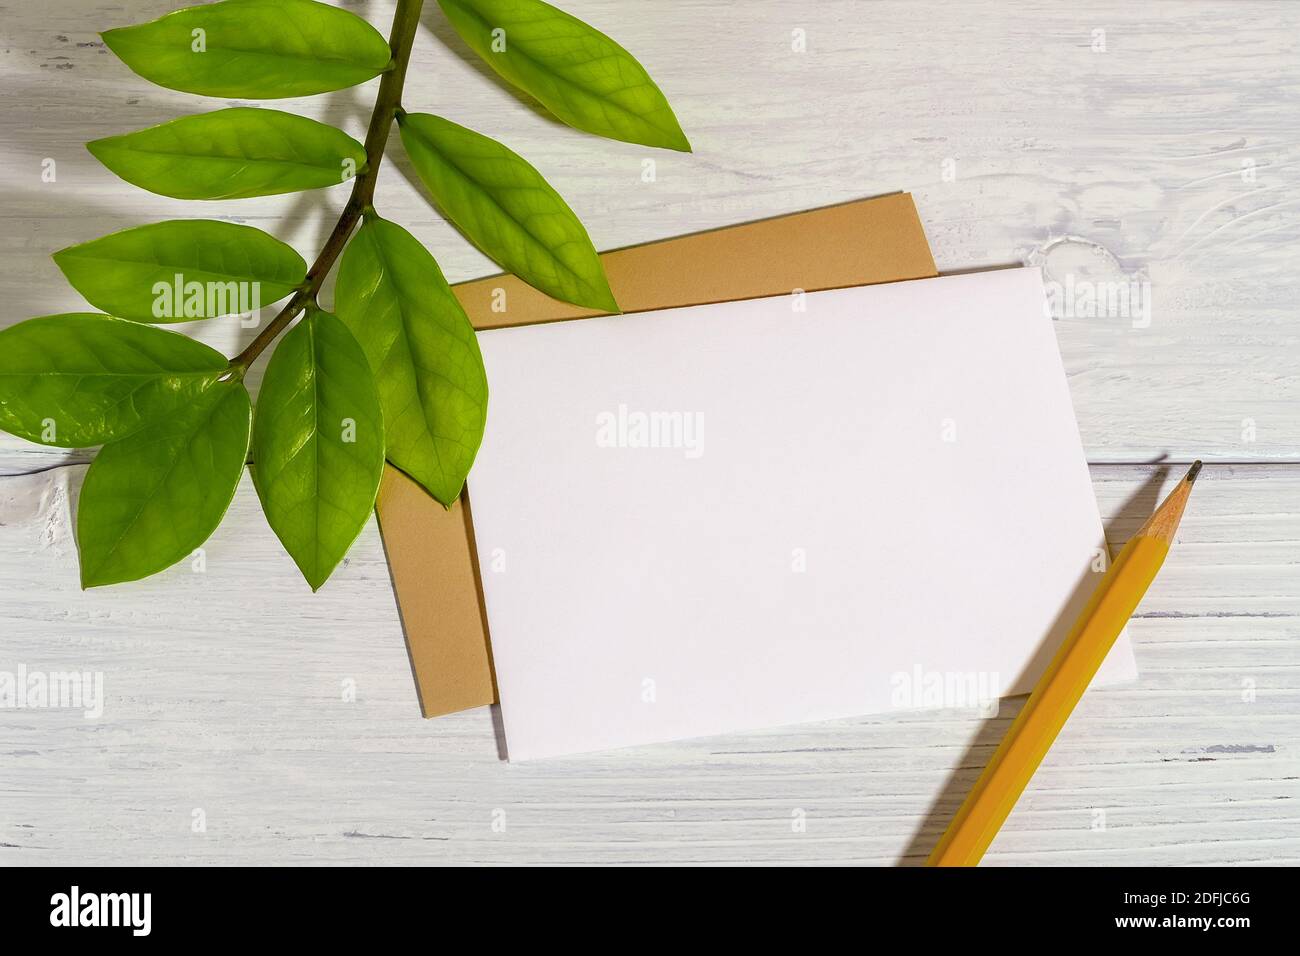 Carta bianca bianca bianca bianca, matita semplice e foglie verdi fresche dell'eternità Zuzu pianta o Zamioculcas zamiifolia su un tavolo di legno bianco. Verde vivo. Foto Stock